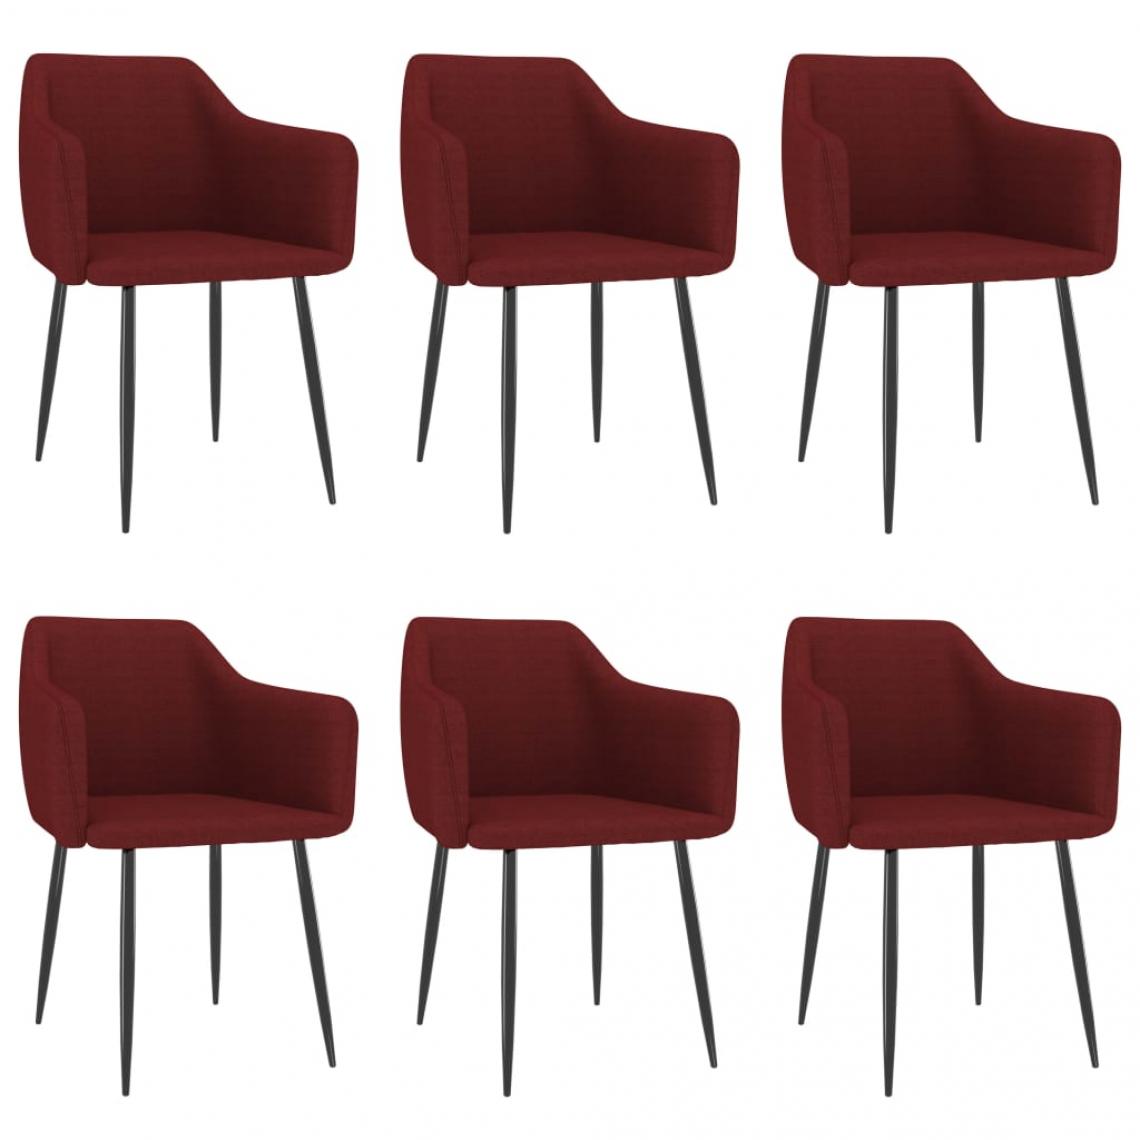 Decoshop26 - Lot de 6 chaises de salle à manger cuisine design moderne tissu rouge bordeaux CDS022821 - Chaises